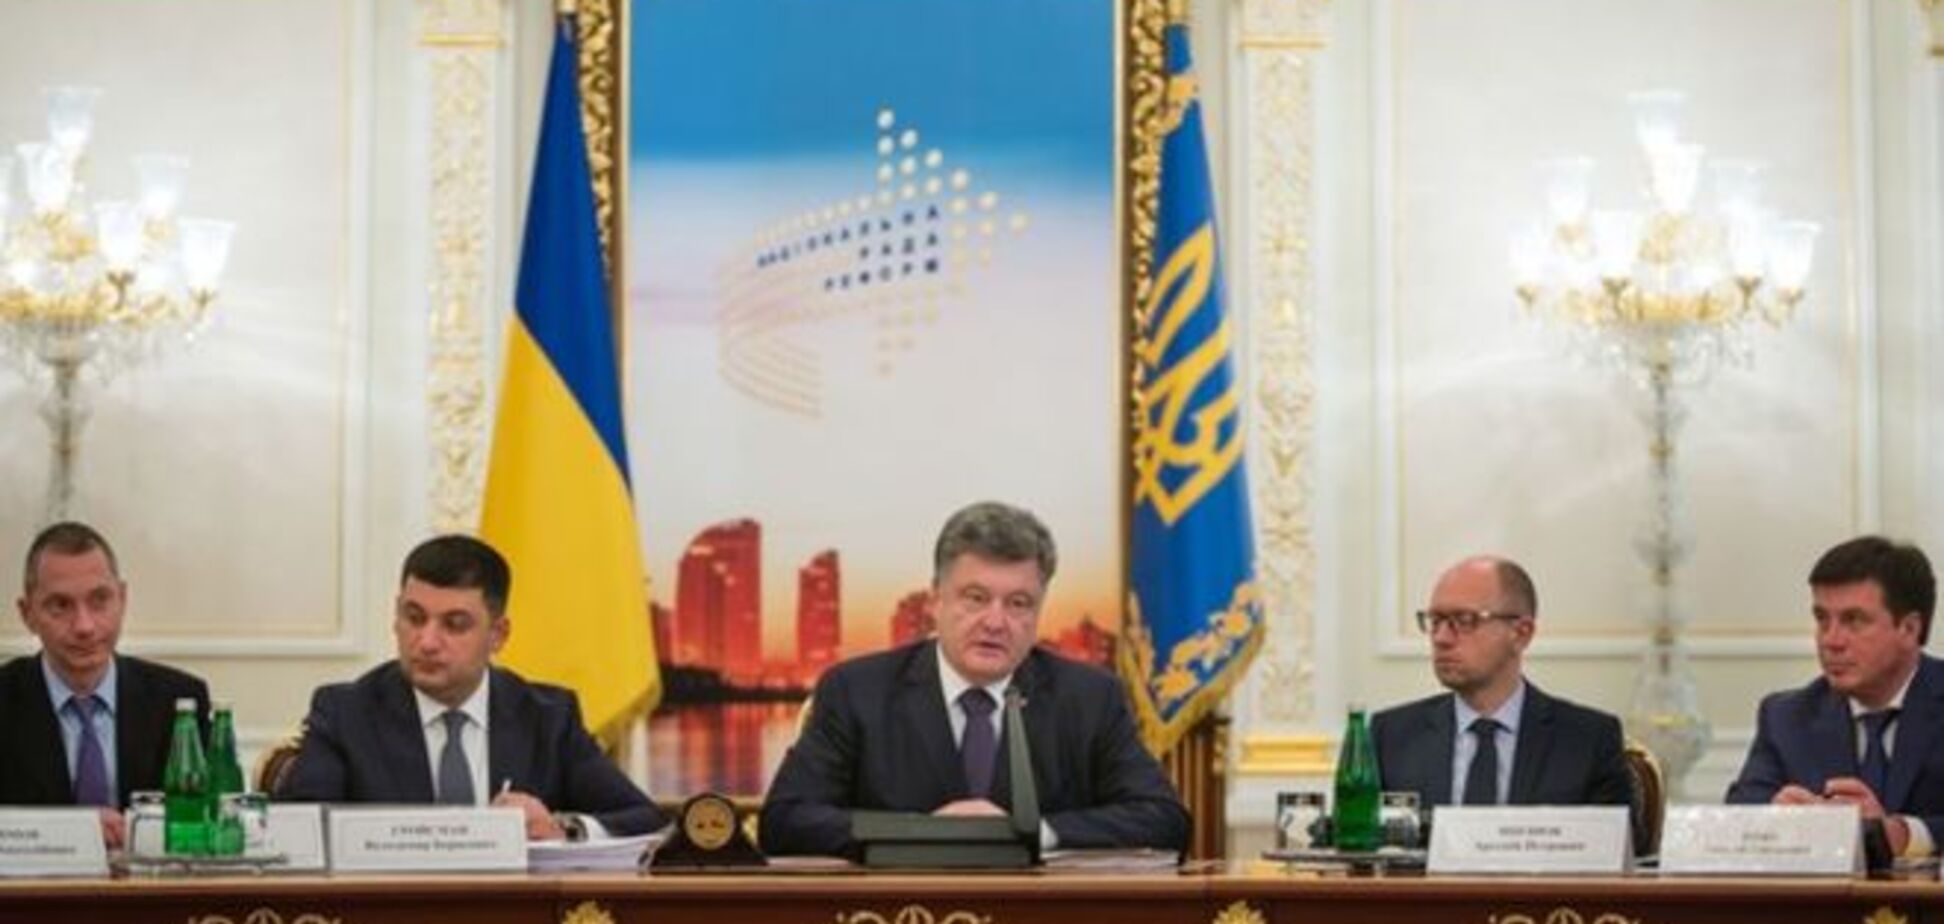 Порошенко требует ускорить темпы реформ в Украине